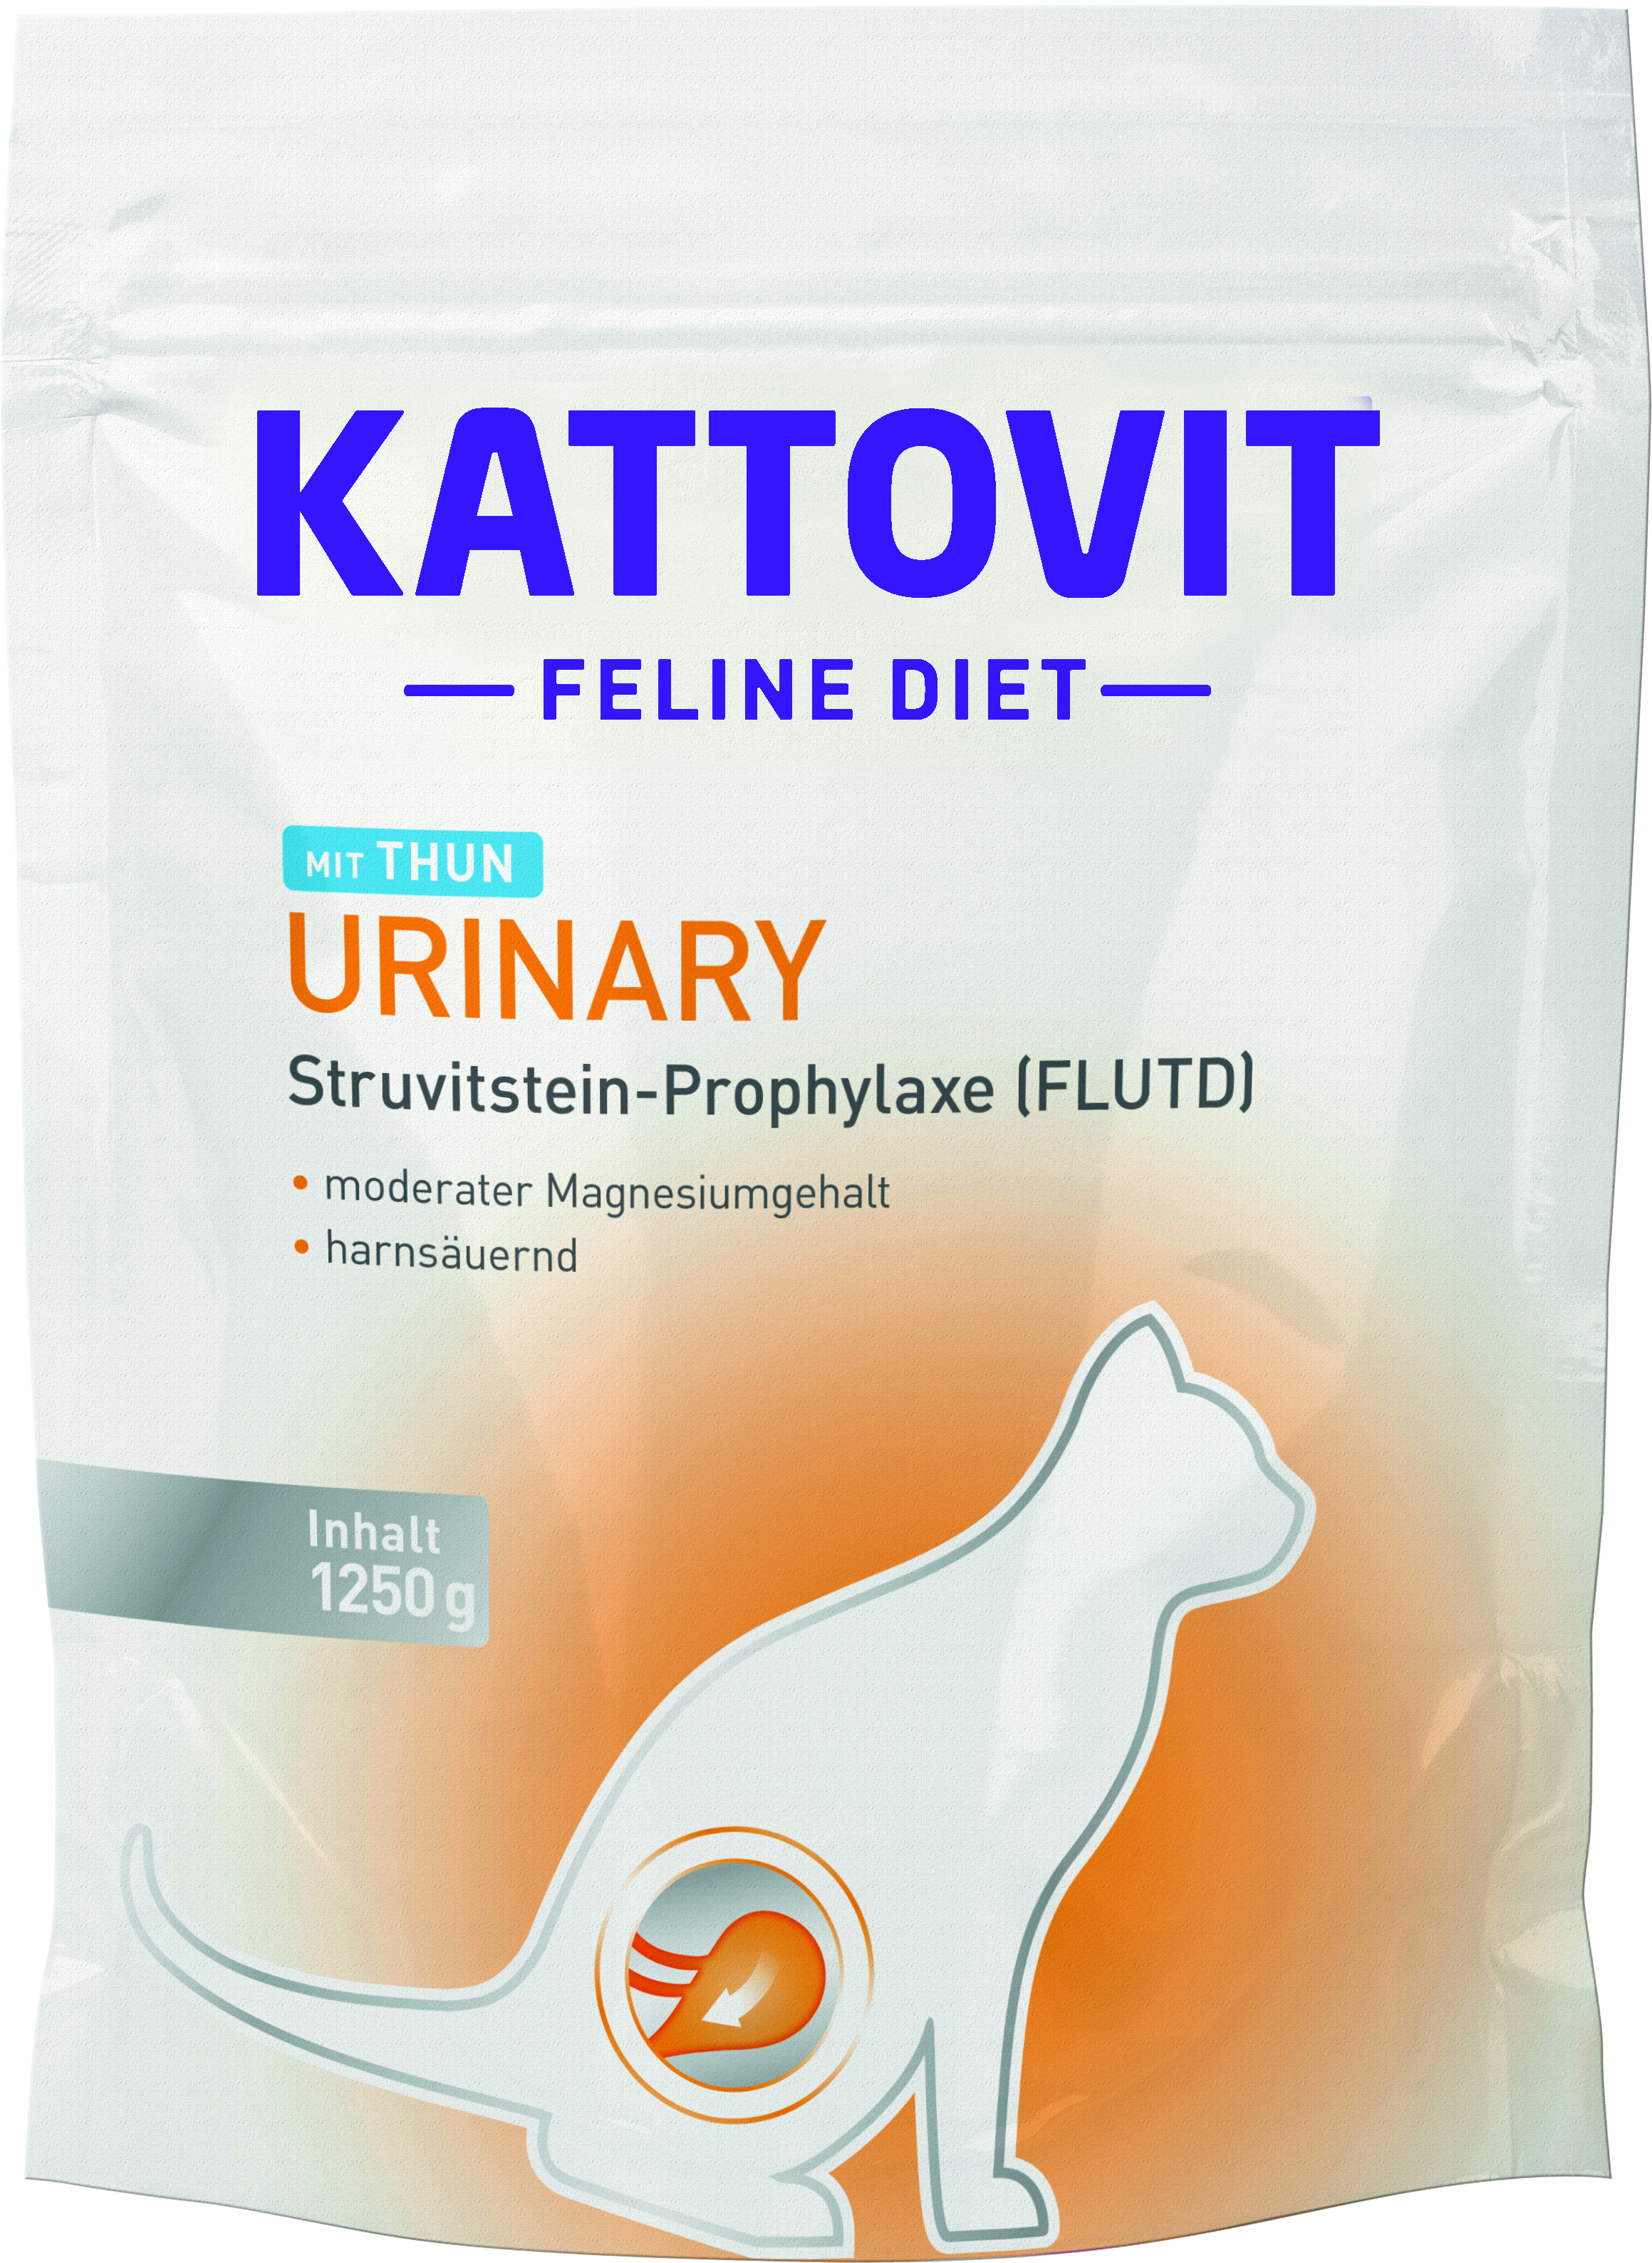 Kattovit Feline Diet Urinary Thunfisch 1250g